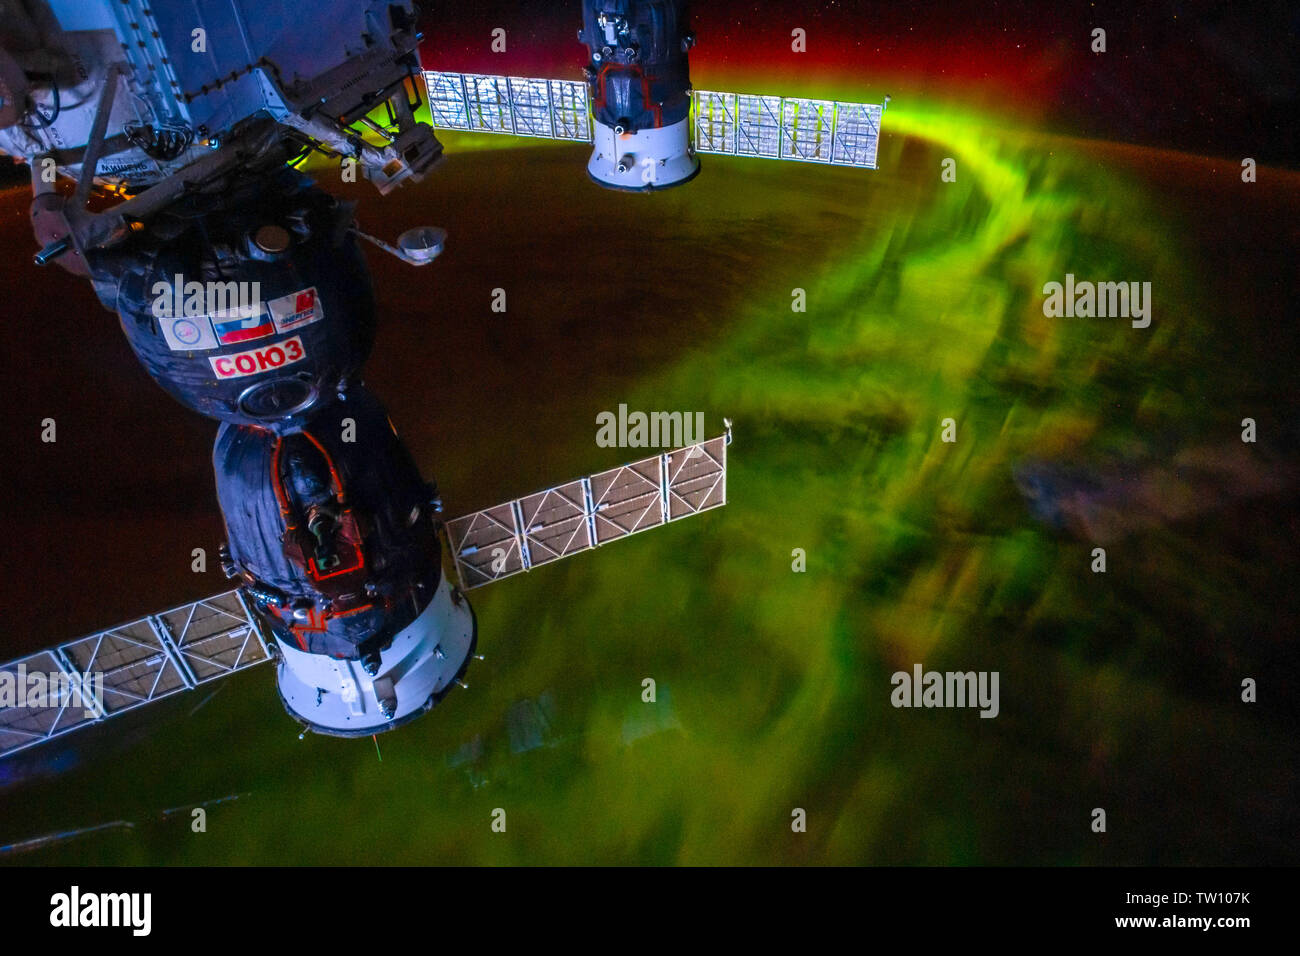 Aurora Borealis encadrée dans l'ISS. La beauté dans la nature de notre planète Terre vue de la Station spatiale internationale (ISS). L'image est une fonction dom Banque D'Images